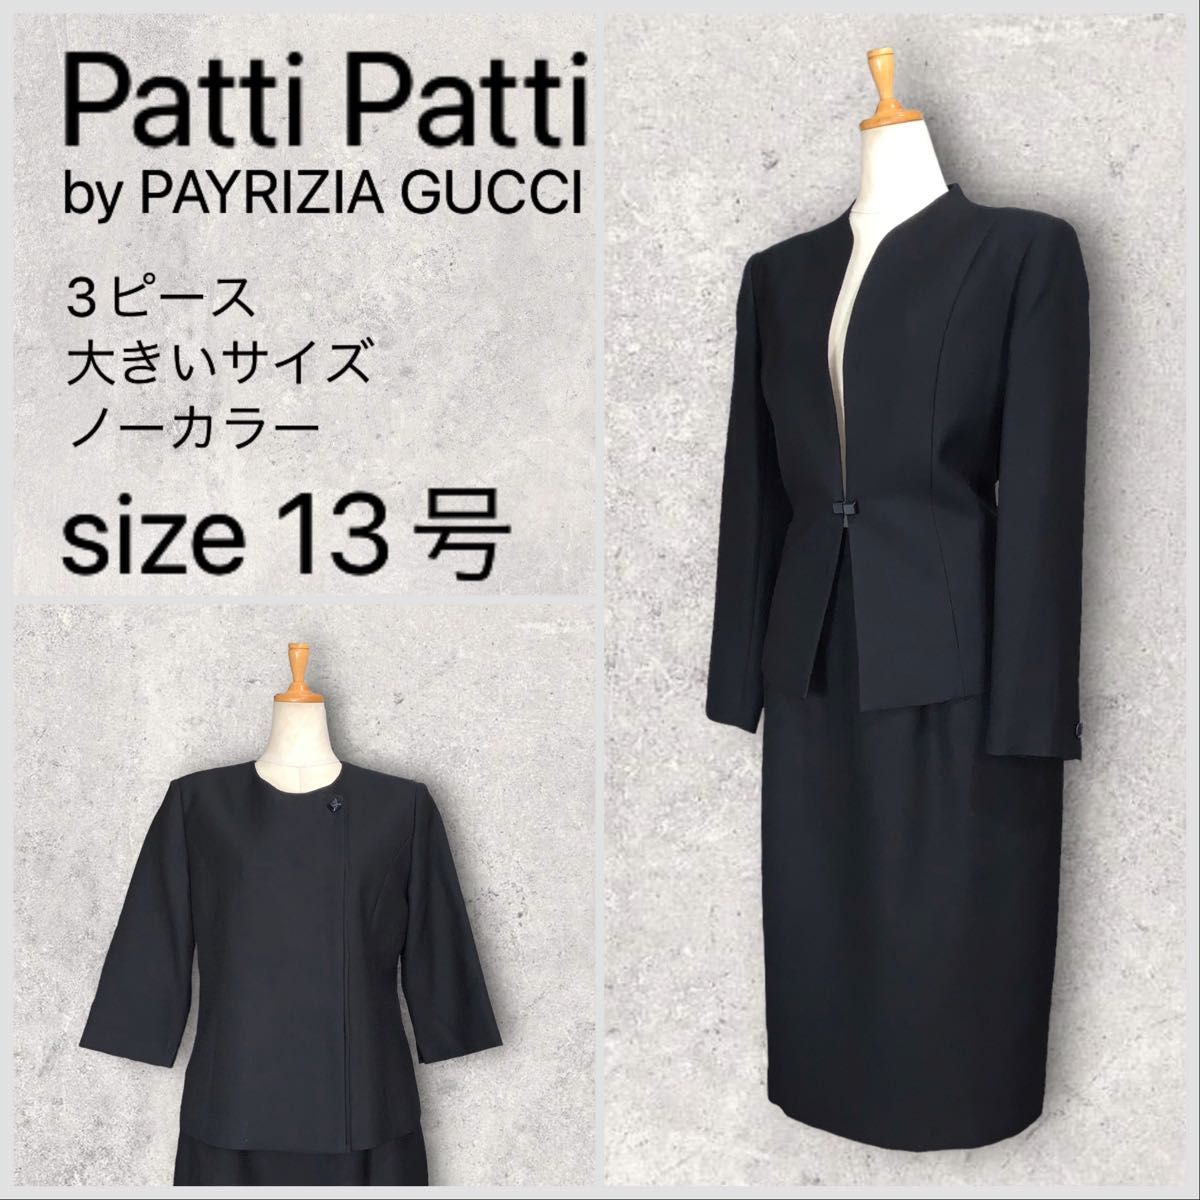 【美品】Patti Patti by PATRIZIA GUCCI パティパティ グッチ スカートスーツ 大きいサイズ 13号